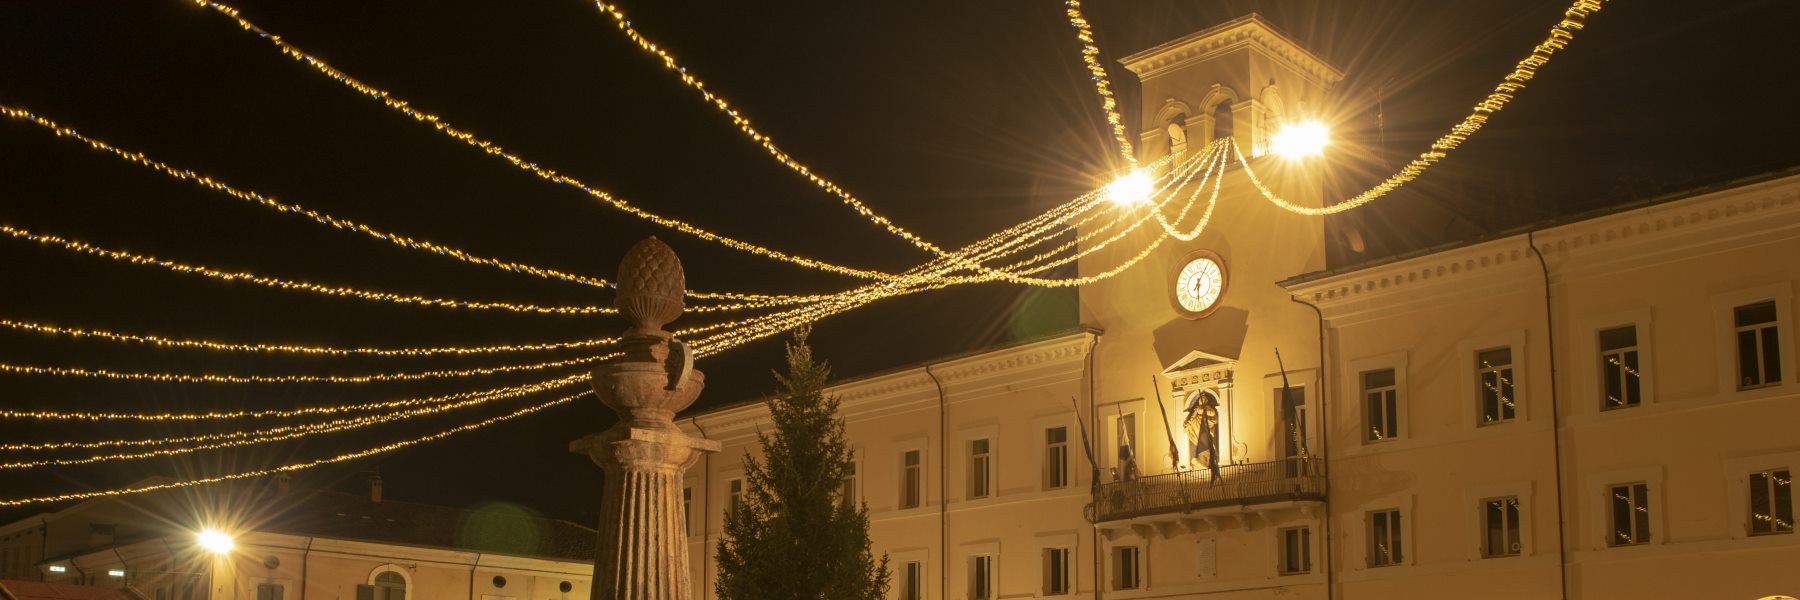 1 - Lumières de Noël sur la Piazza Garibaldi